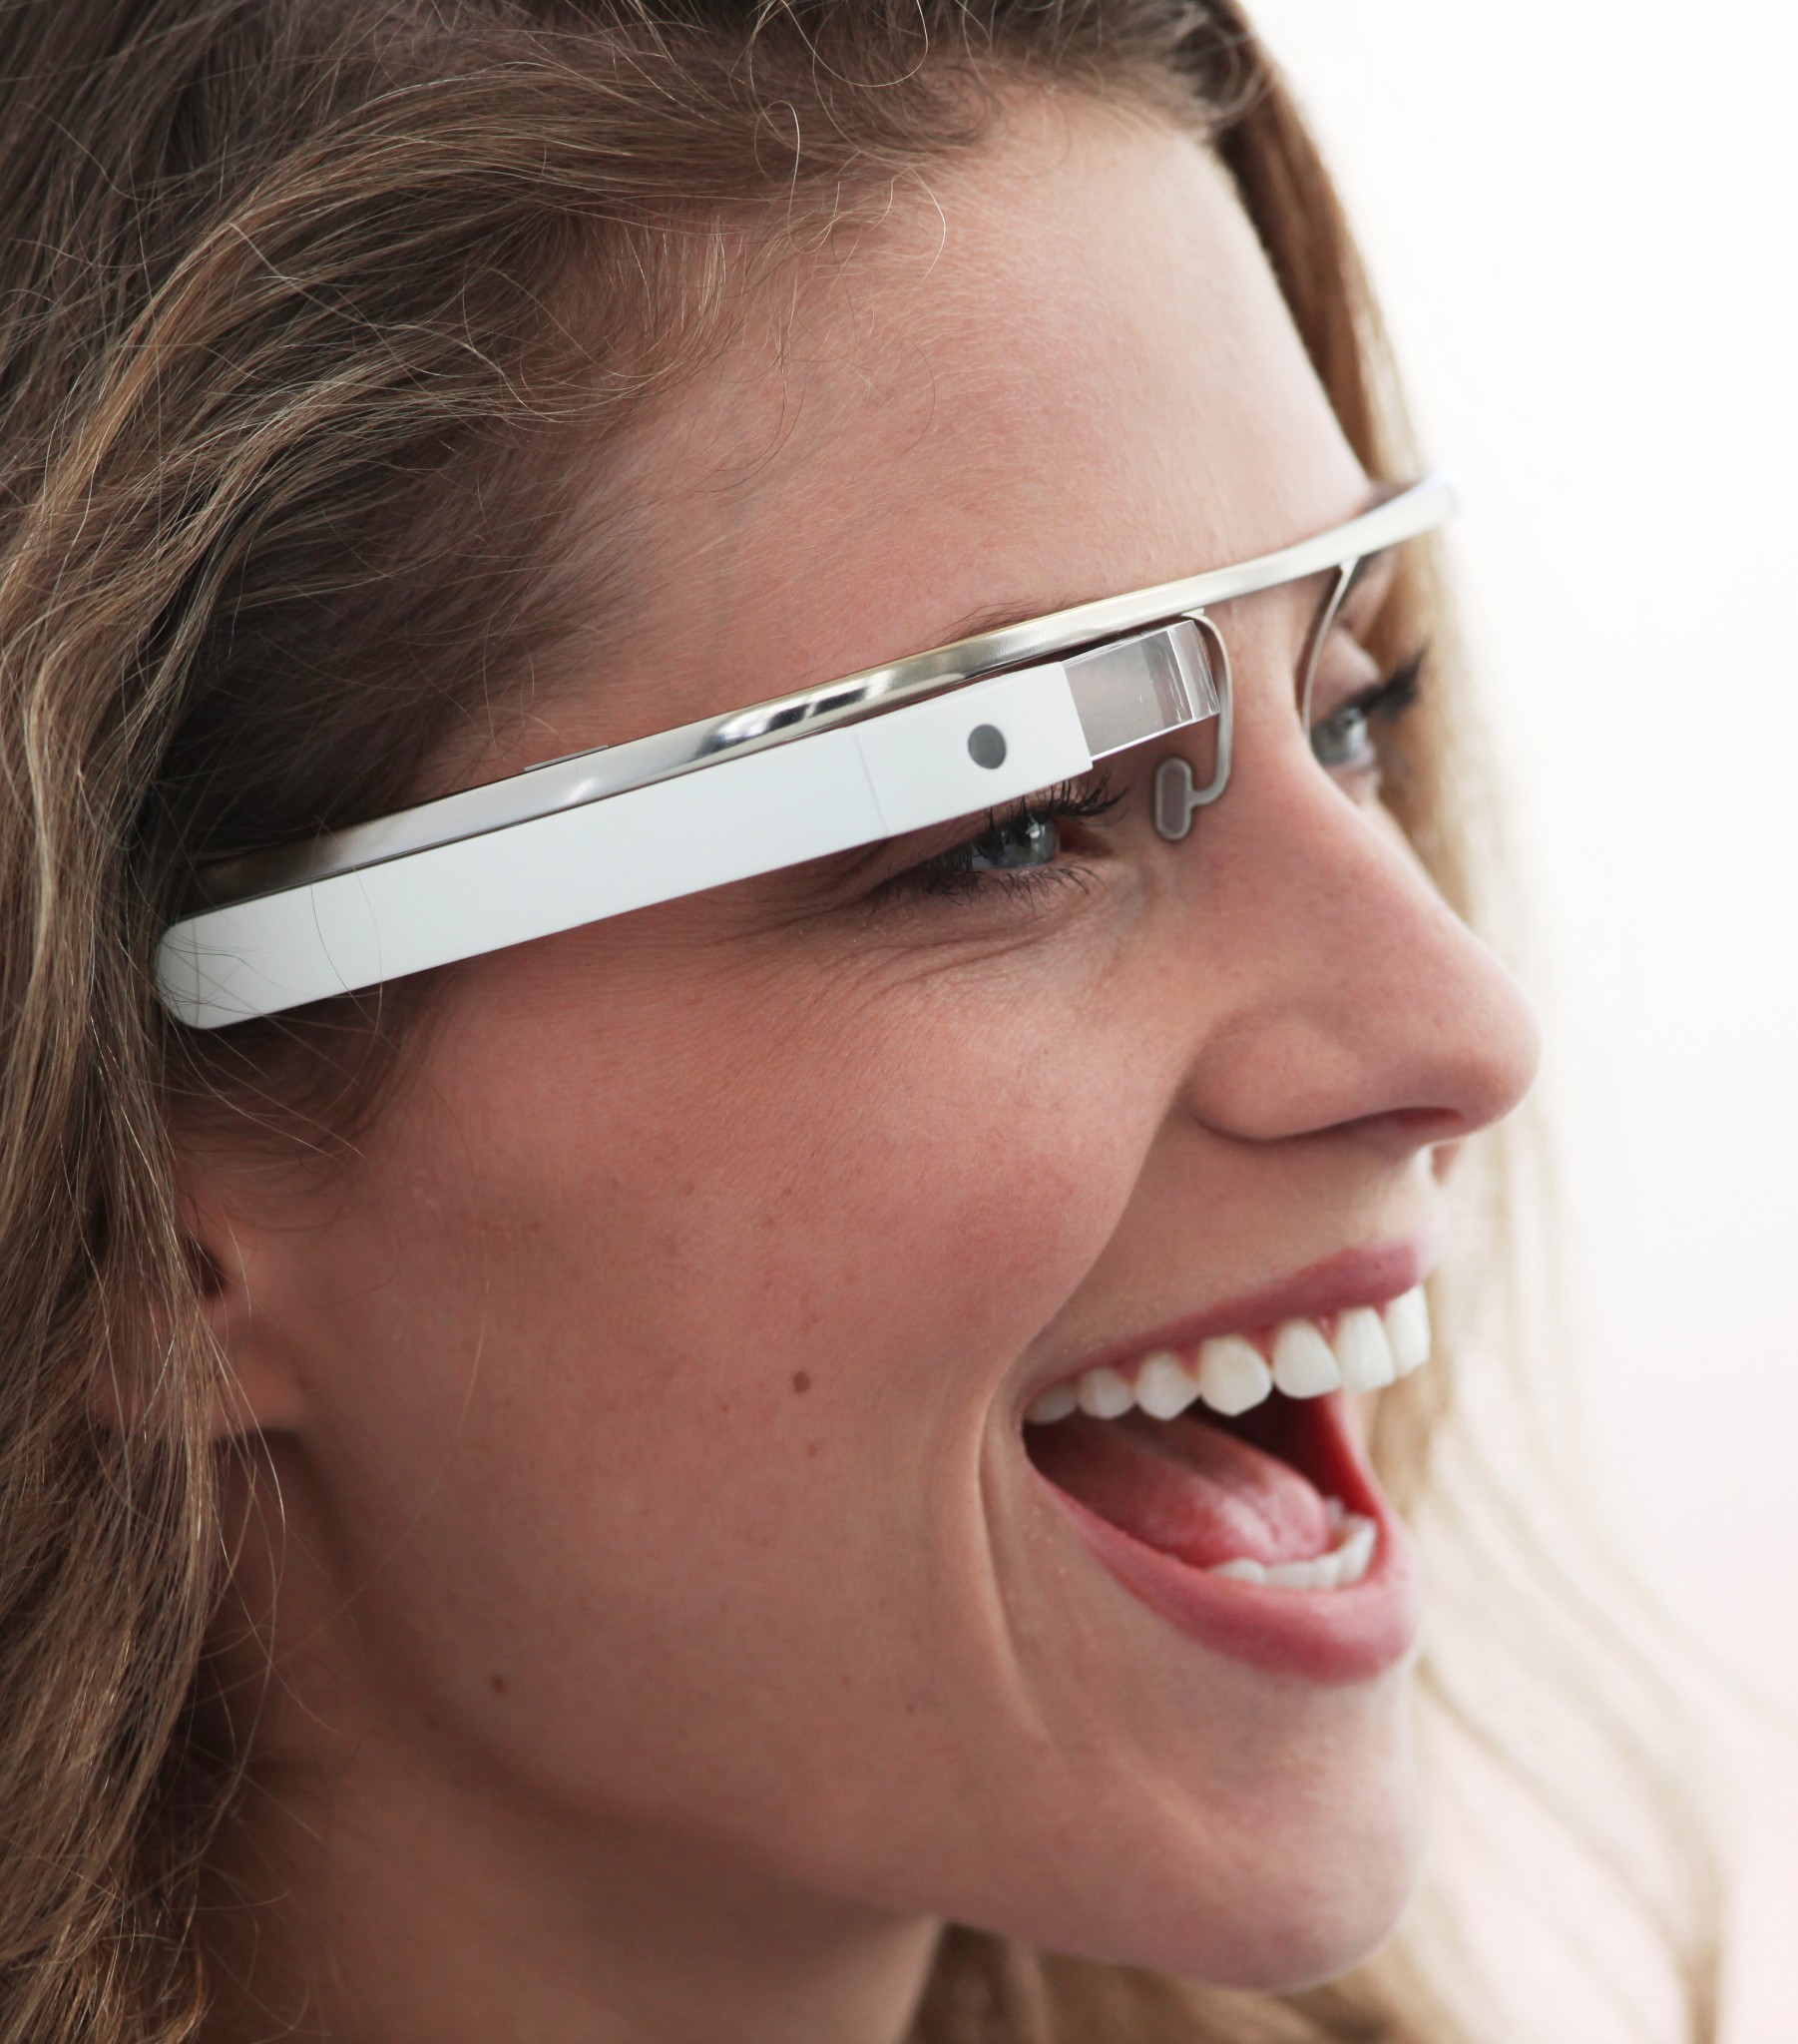 Les Google Glass, prototypes au même titre que l'iWatch (la montre connectée d'Apple), préfigurent-elles l'usage futur de la connexion à Internet ? © Google, Project Glass